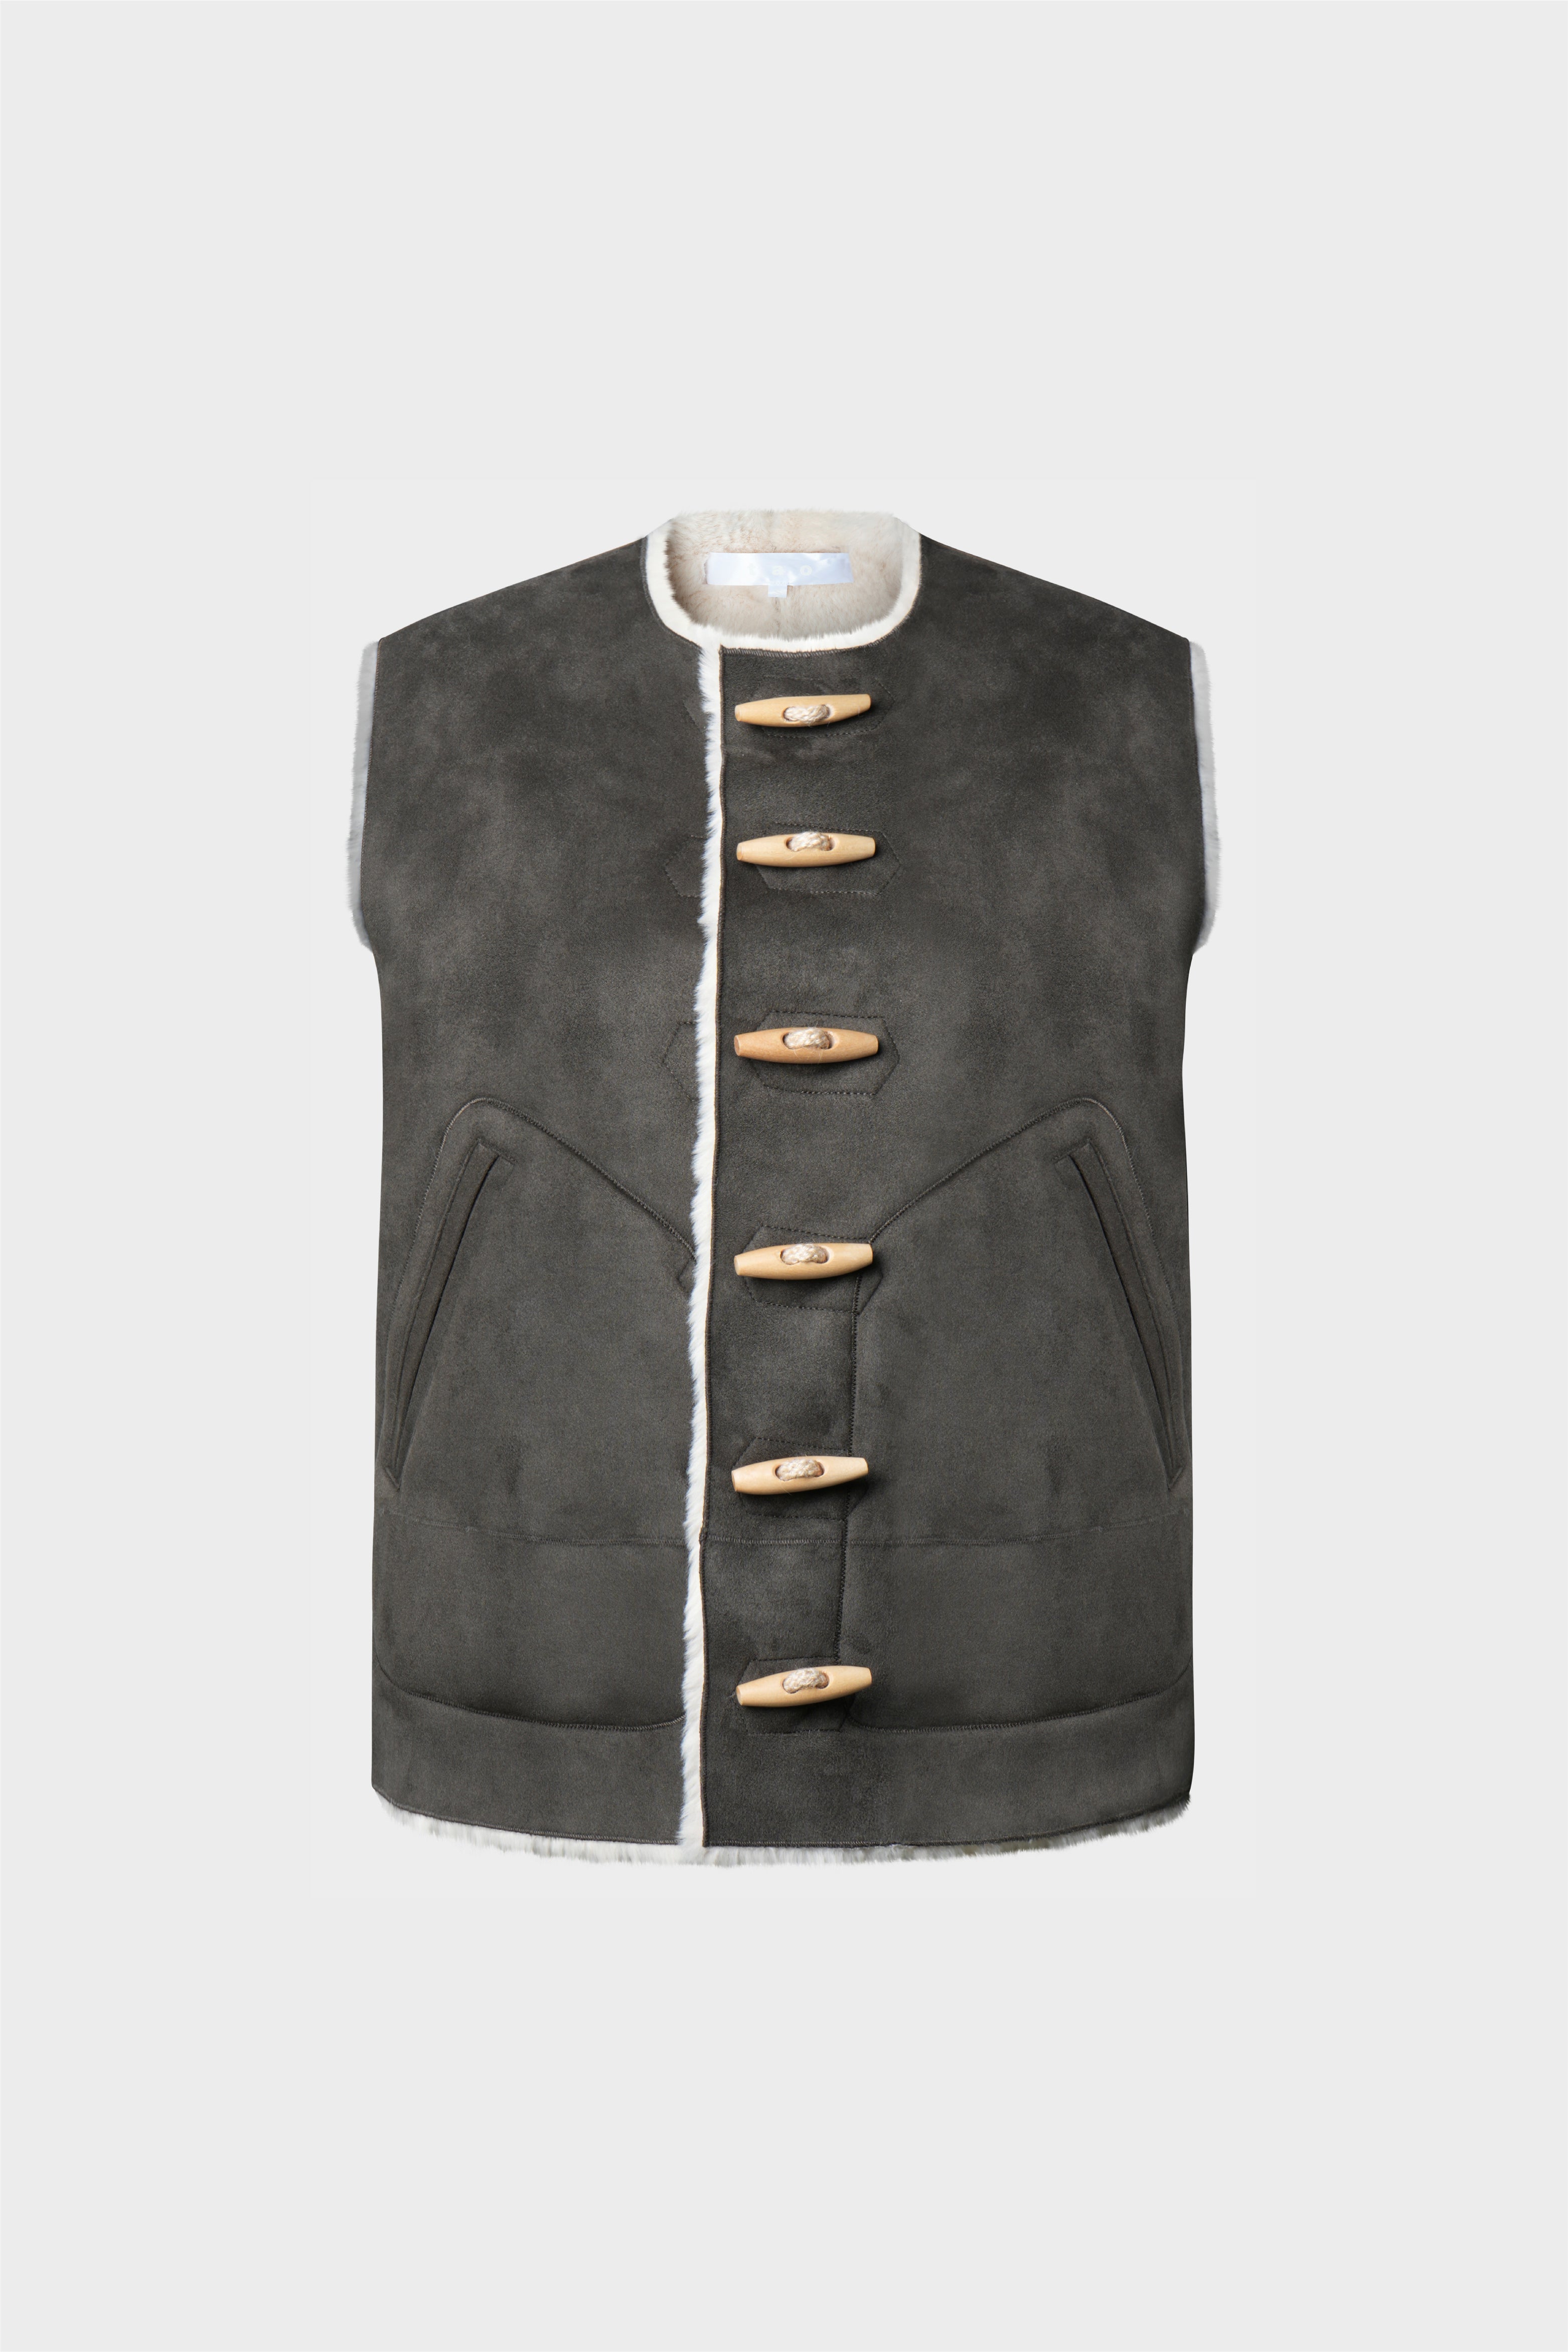 Selectshop FRAME - TAO Vest Outerwear Concept Store Dubai